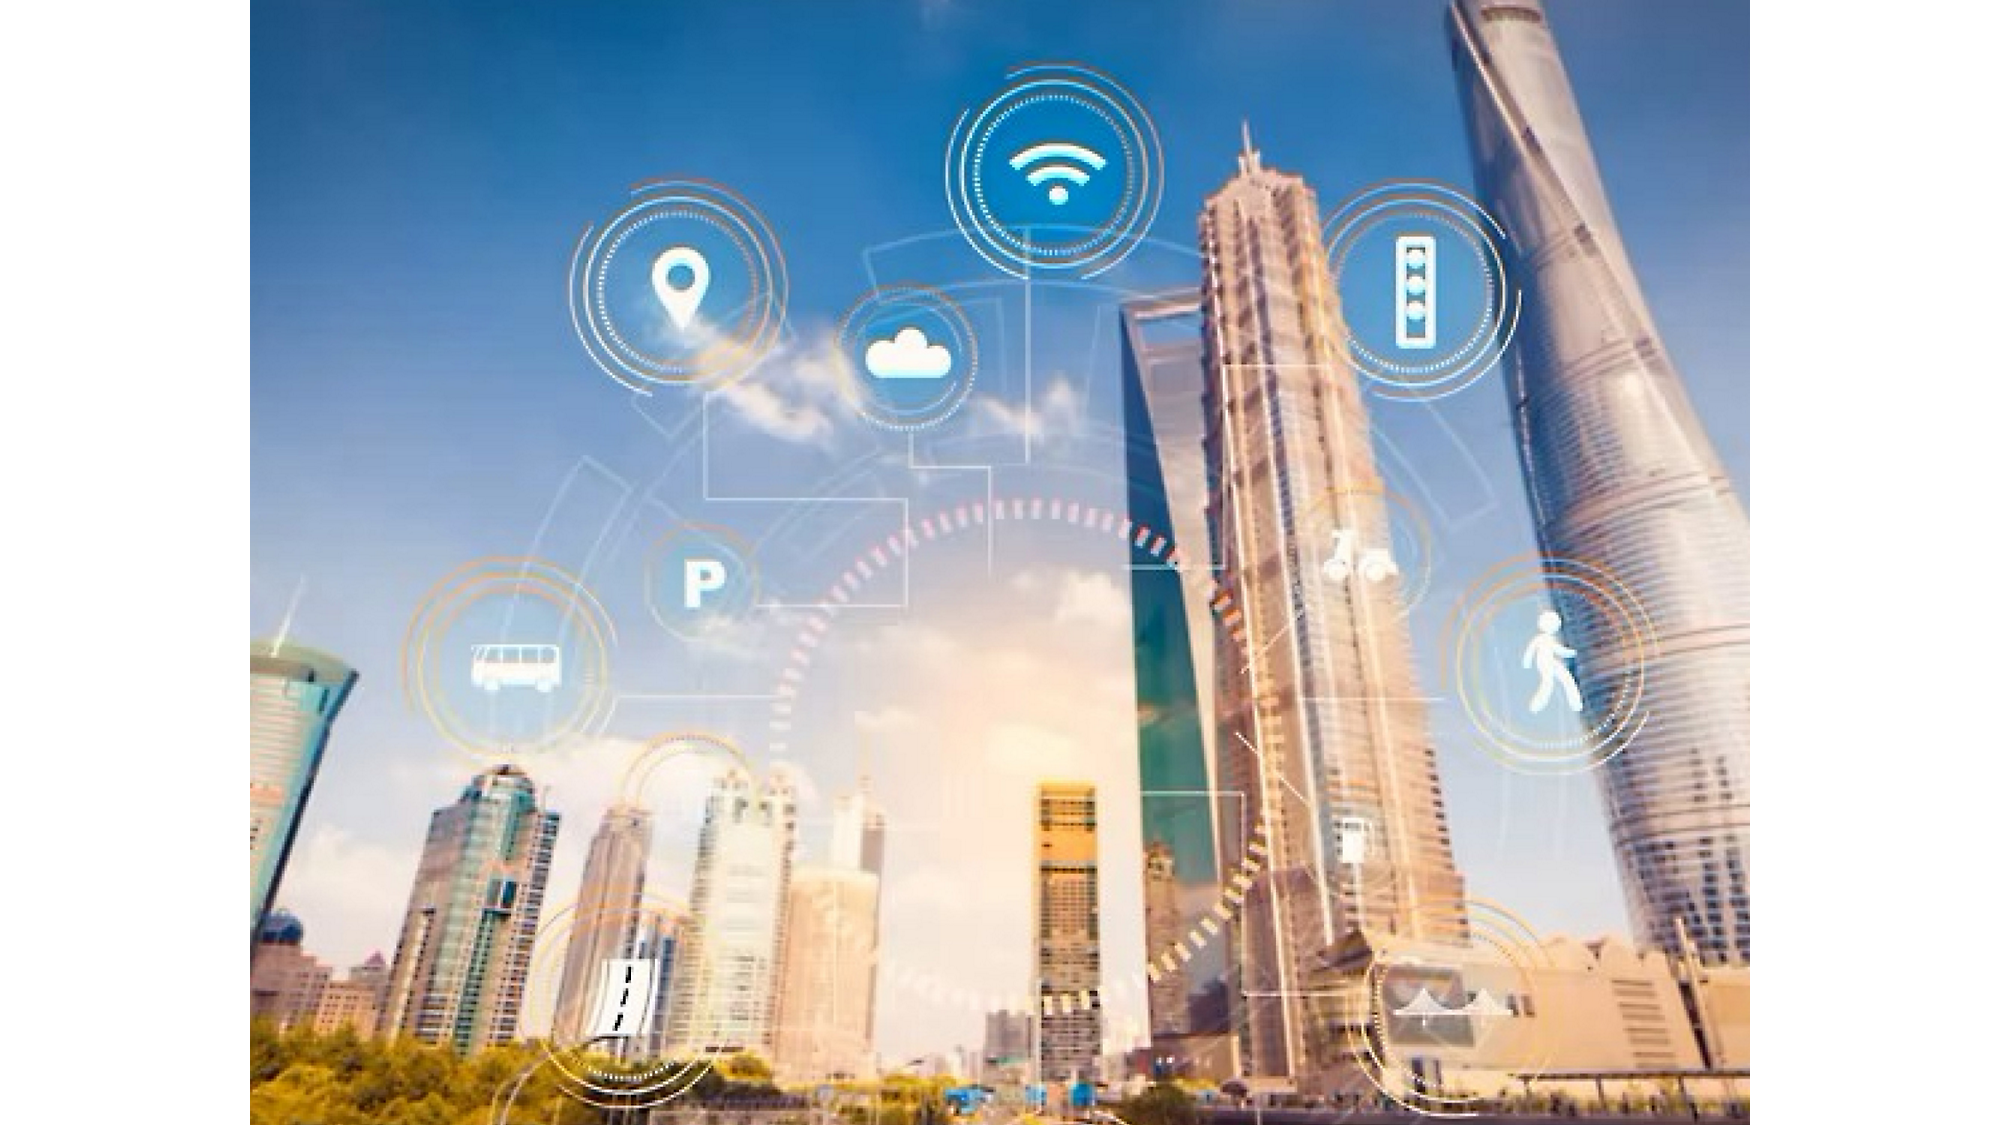 Ilustrație cu un oraș inteligent cu pictograme digitale reprezentând Wi-Fi, informatică în cloud și alte tehnologii cu zgârie-nori.